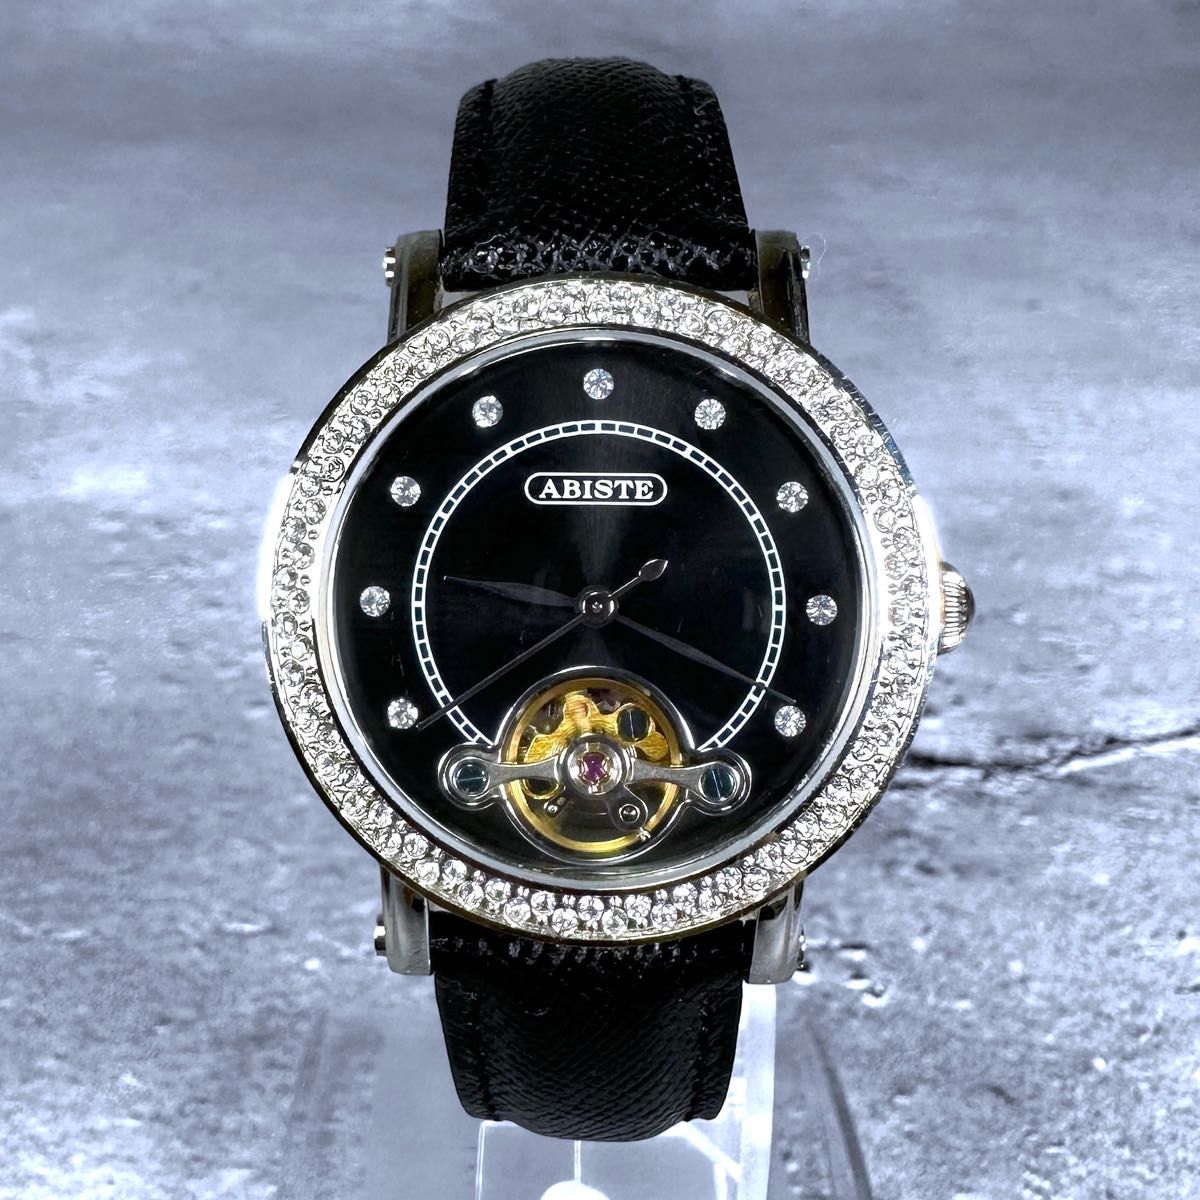 【美品】ABISTE ラウンドフェイス クリスタル レザーベルト 腕時計